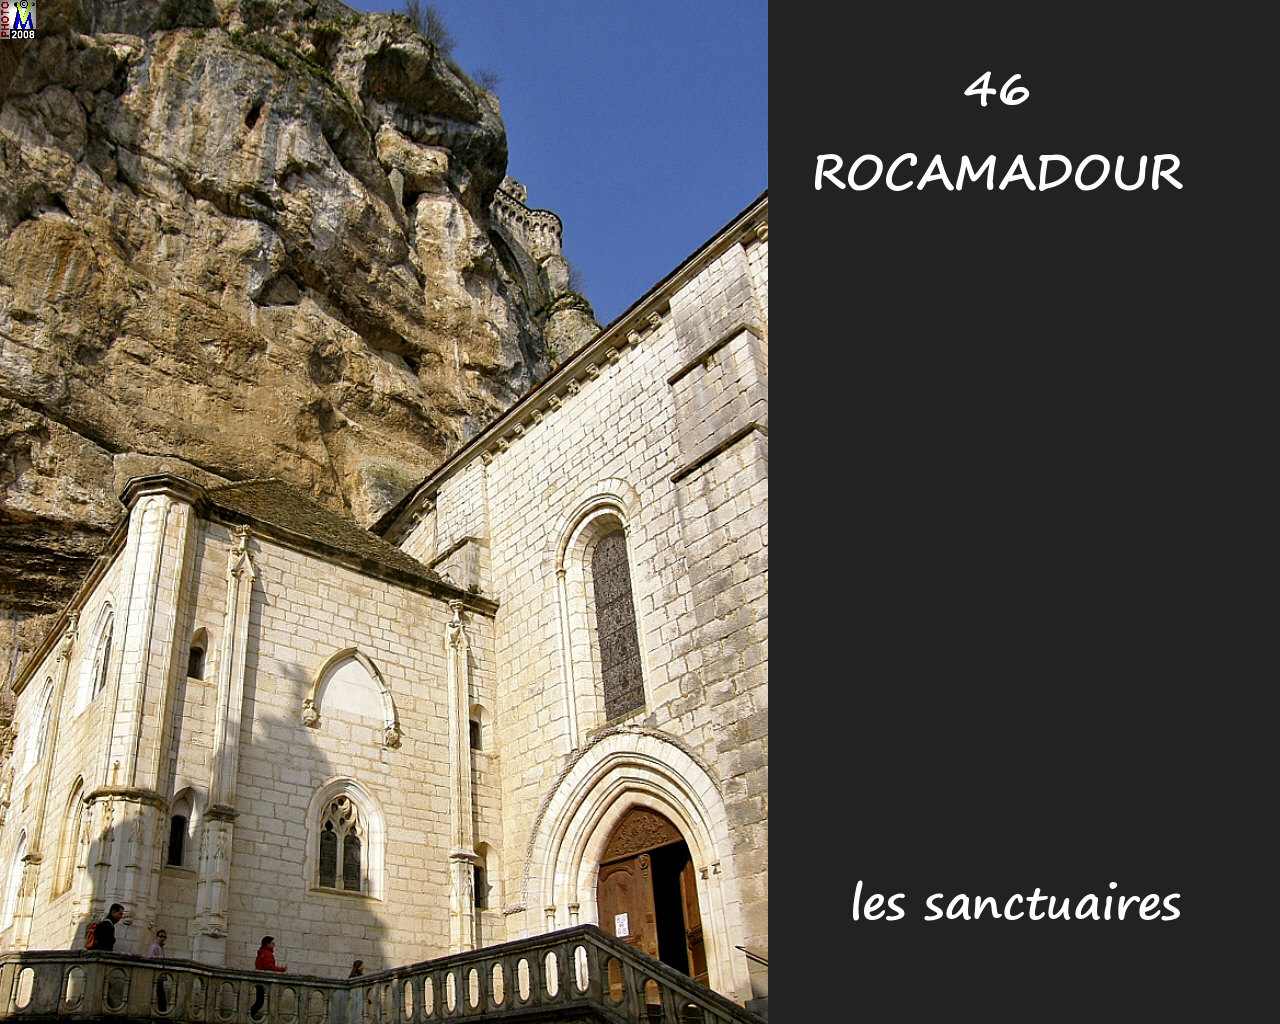 46ROCAMADOUR_sanctuaires_252.jpg